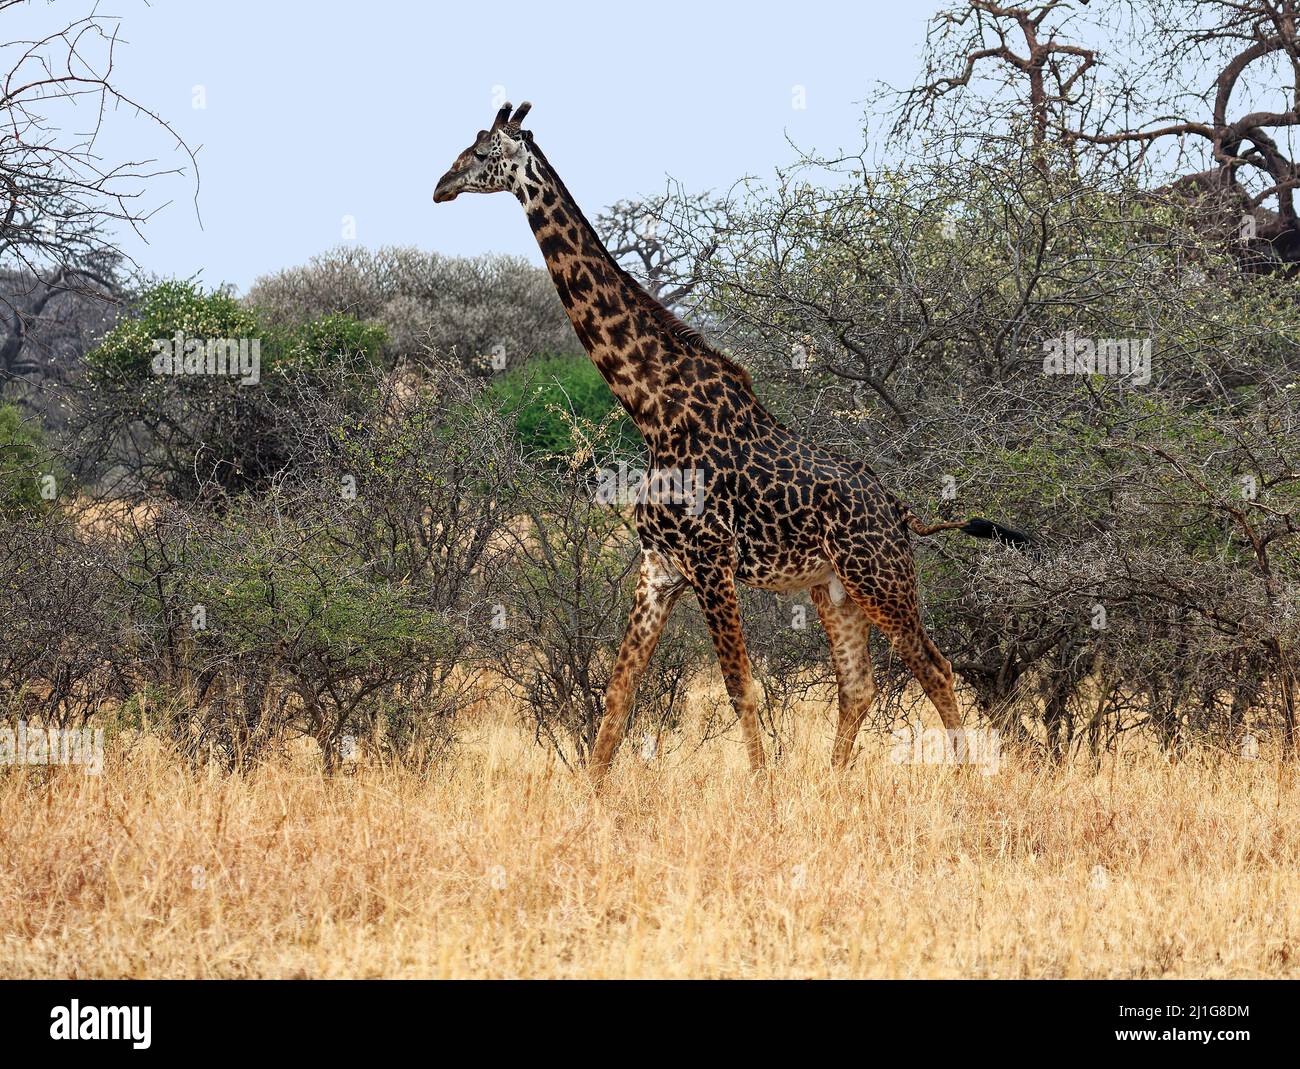 Jirafa macho; adulto, caminando; jirafa camelopardalis, mamífero más alto, fauna, piel manchada, herbívoro, piernas largas; cuello largo, Animal, en movimiento, Tarangir Foto de stock